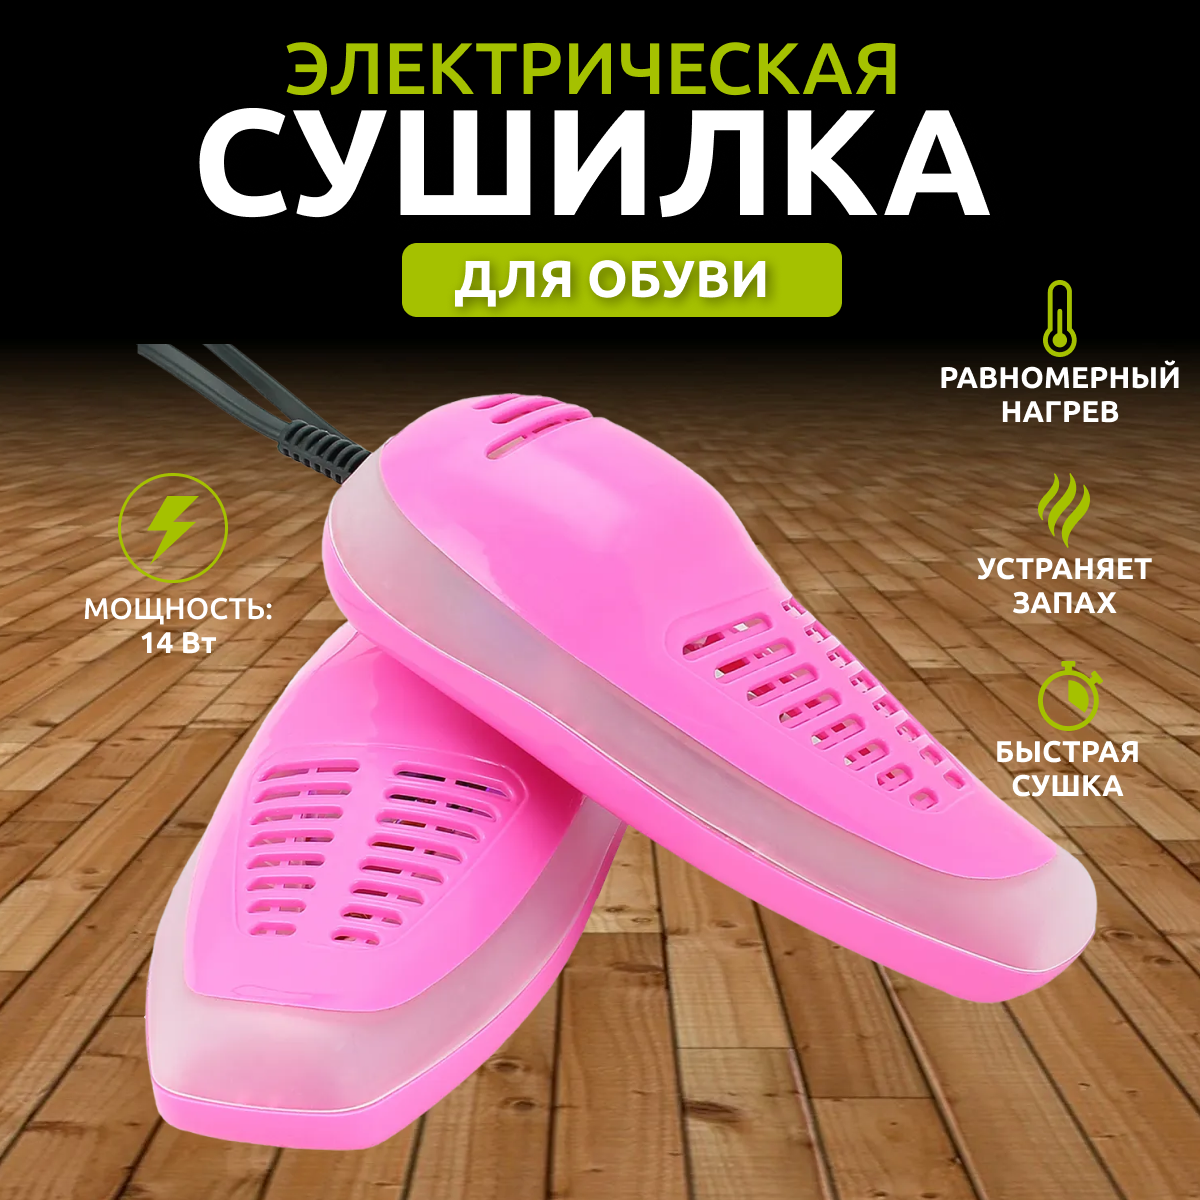 Сушилка для обуви электрическая розового цвета / Сушка обуви / Для обуви